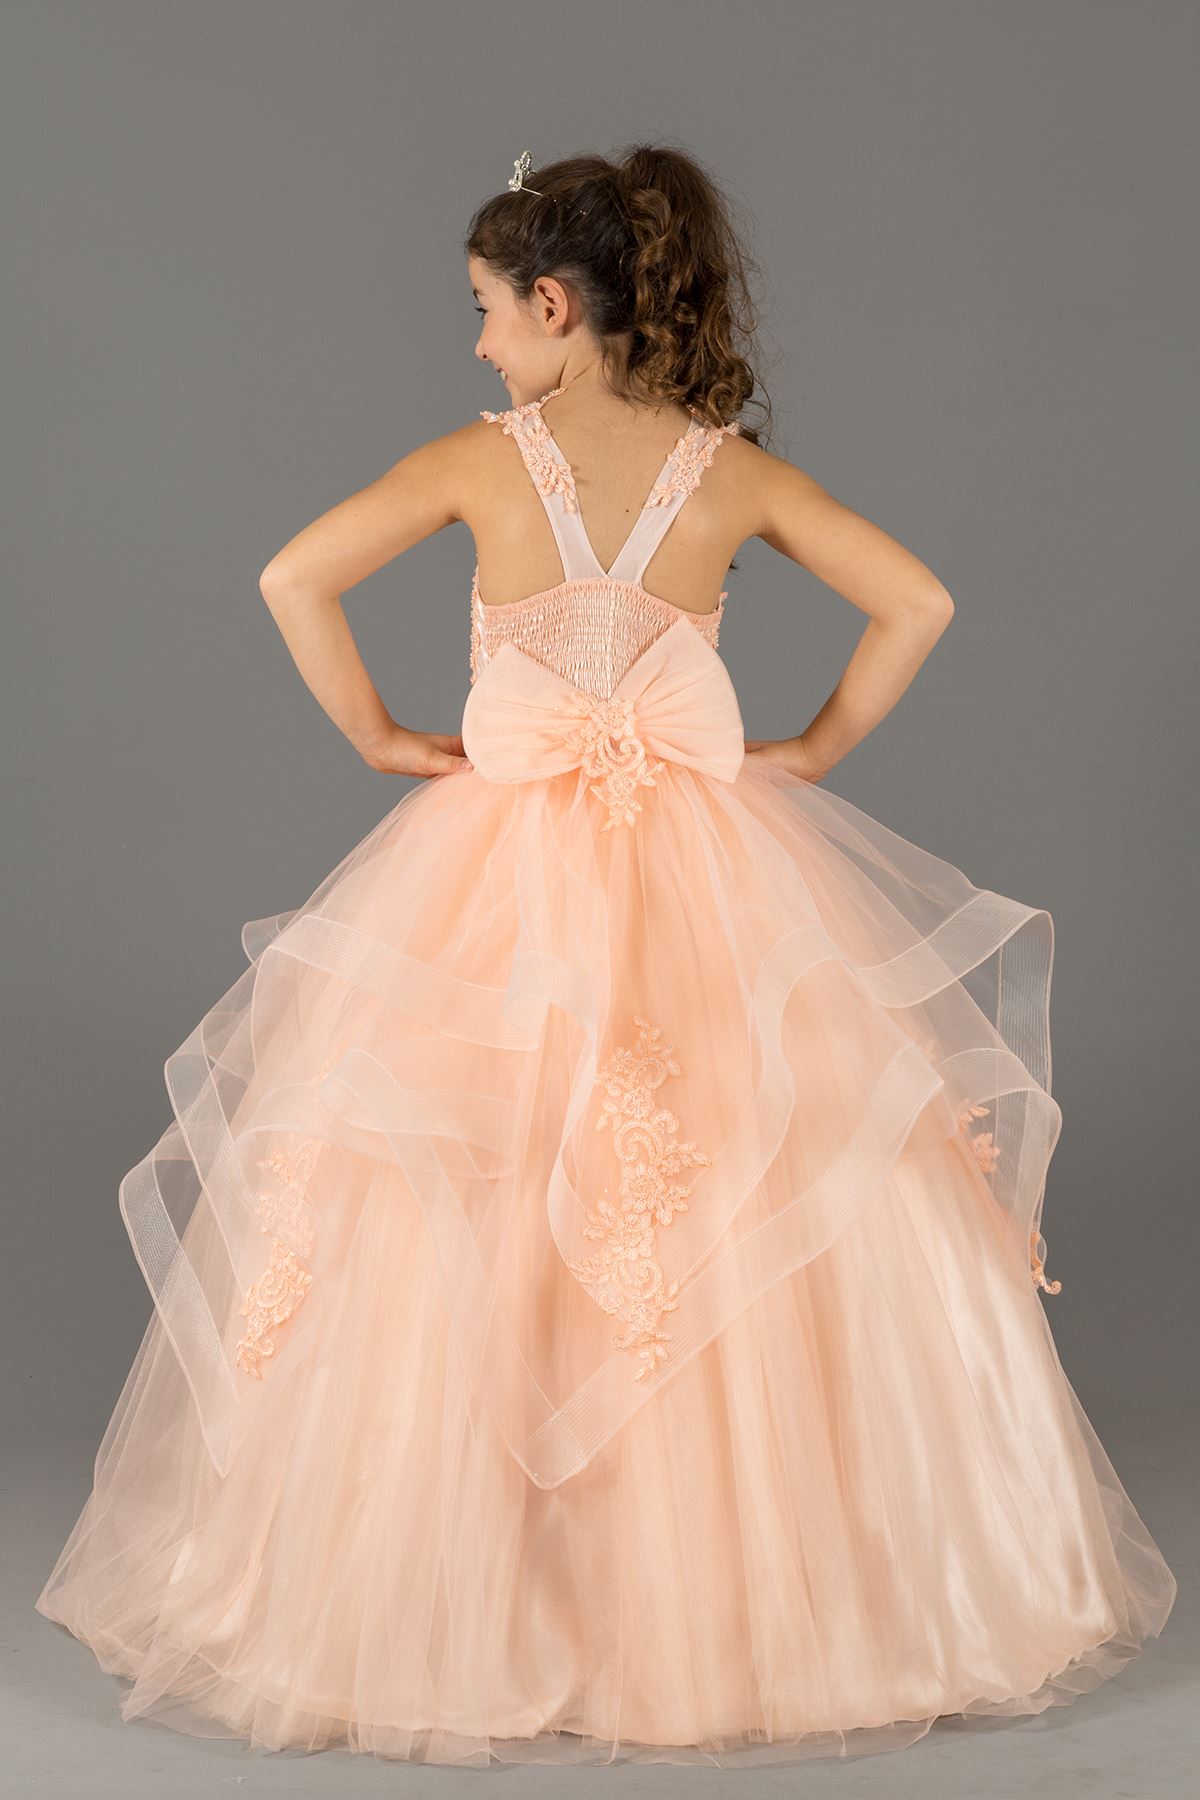 レイヤードスカートディテールと刺繍のアップリケ578サーモンのふわふわの女の子のイブニングドレス